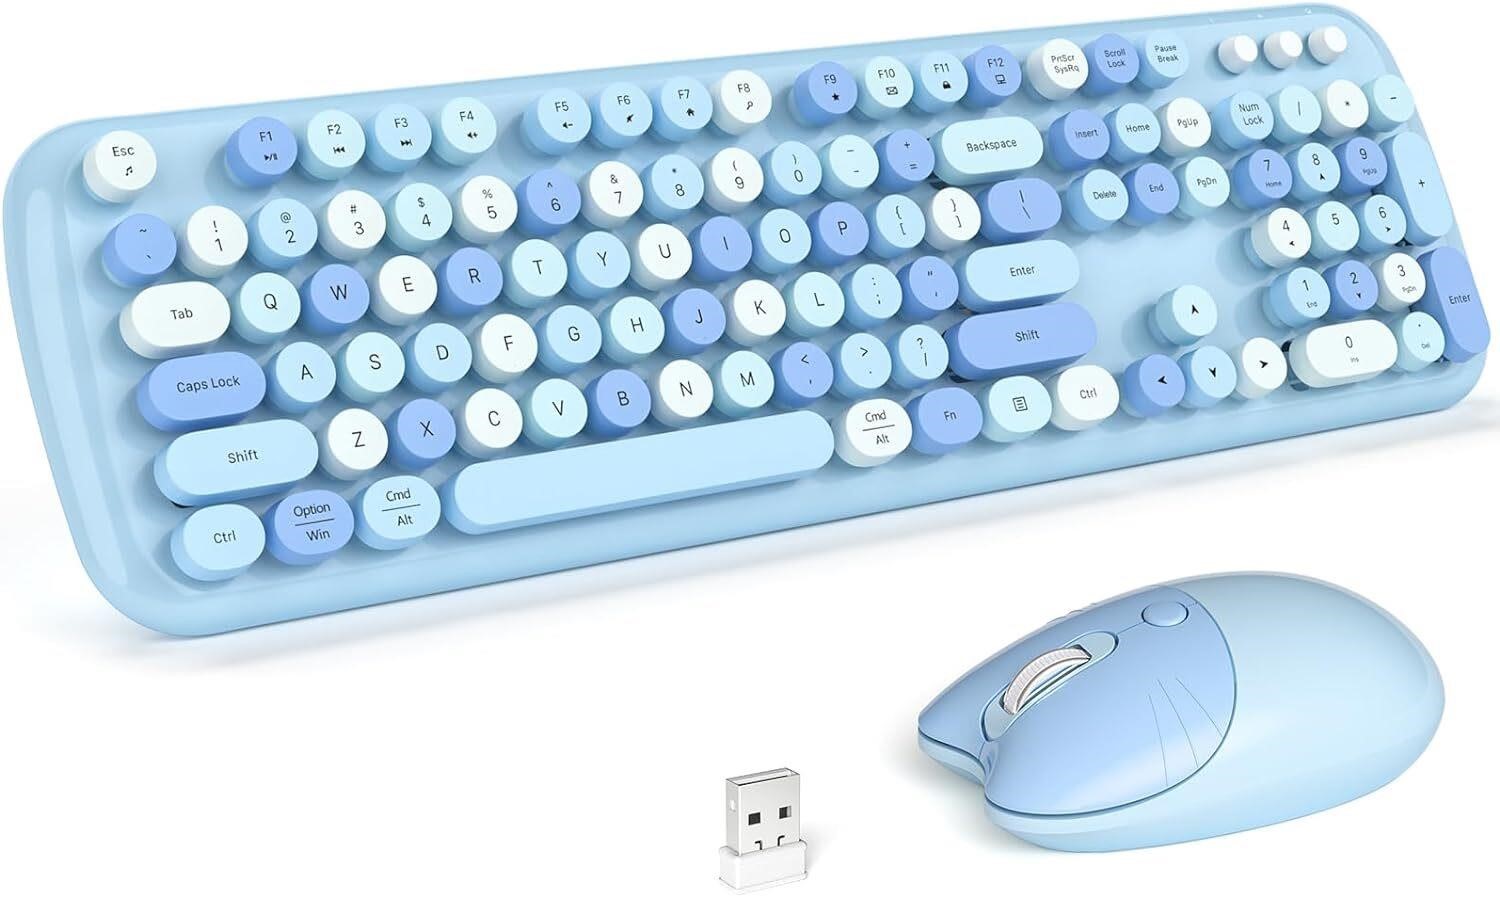 Wireless Keyboard Mouse Combo - USB  PC  Mac